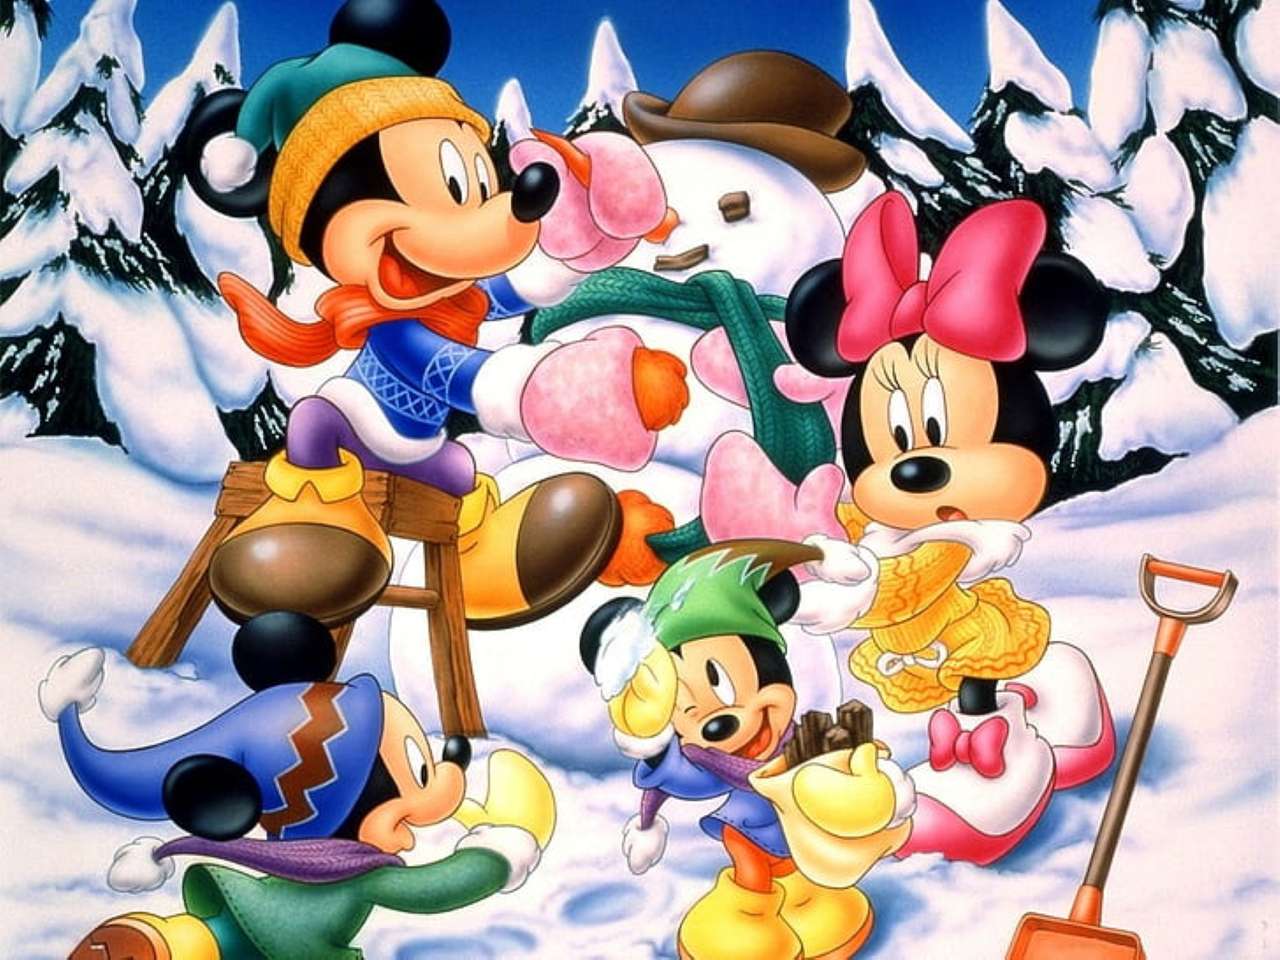 Мінні, Міккі та їхні племінники граються в снігу онлайн пазл